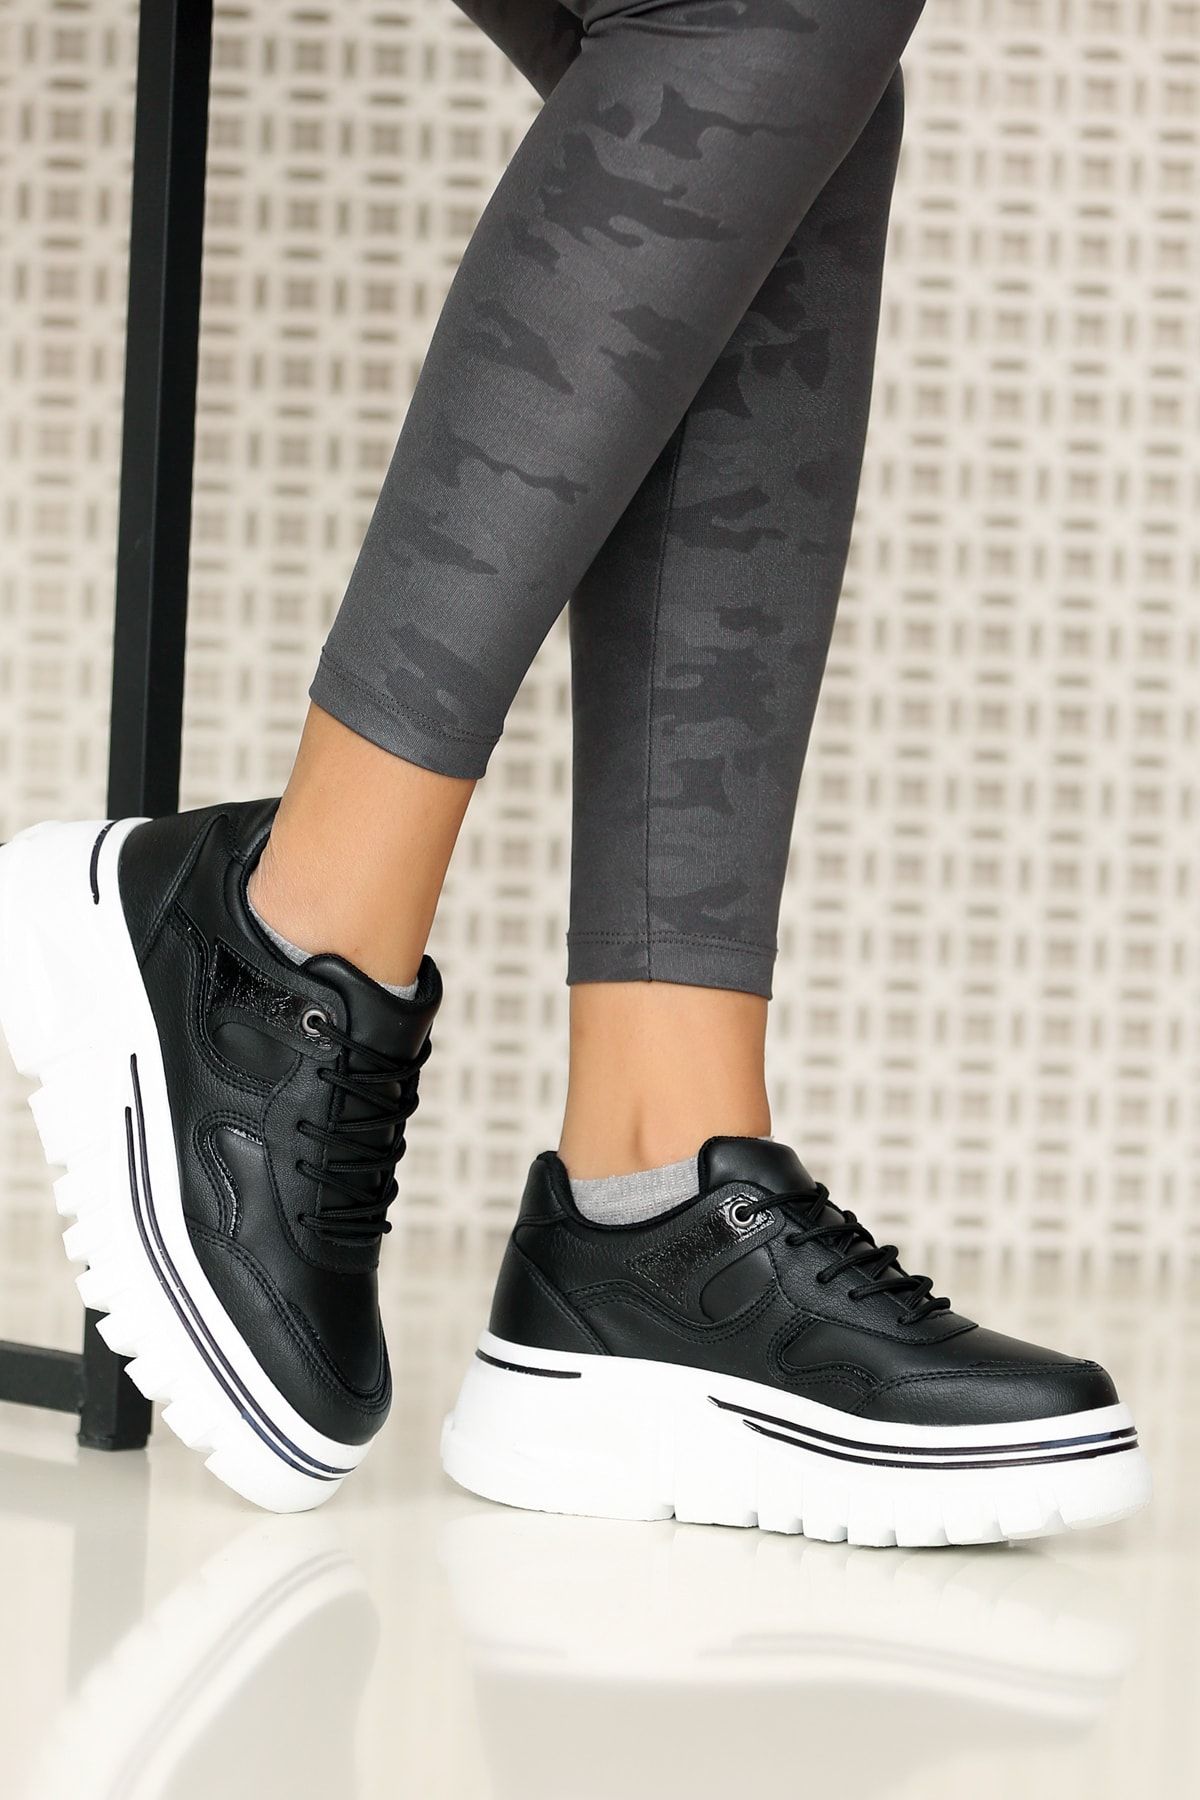 Pembe Potin Kadın Siyah Sneaker Ayakkabı